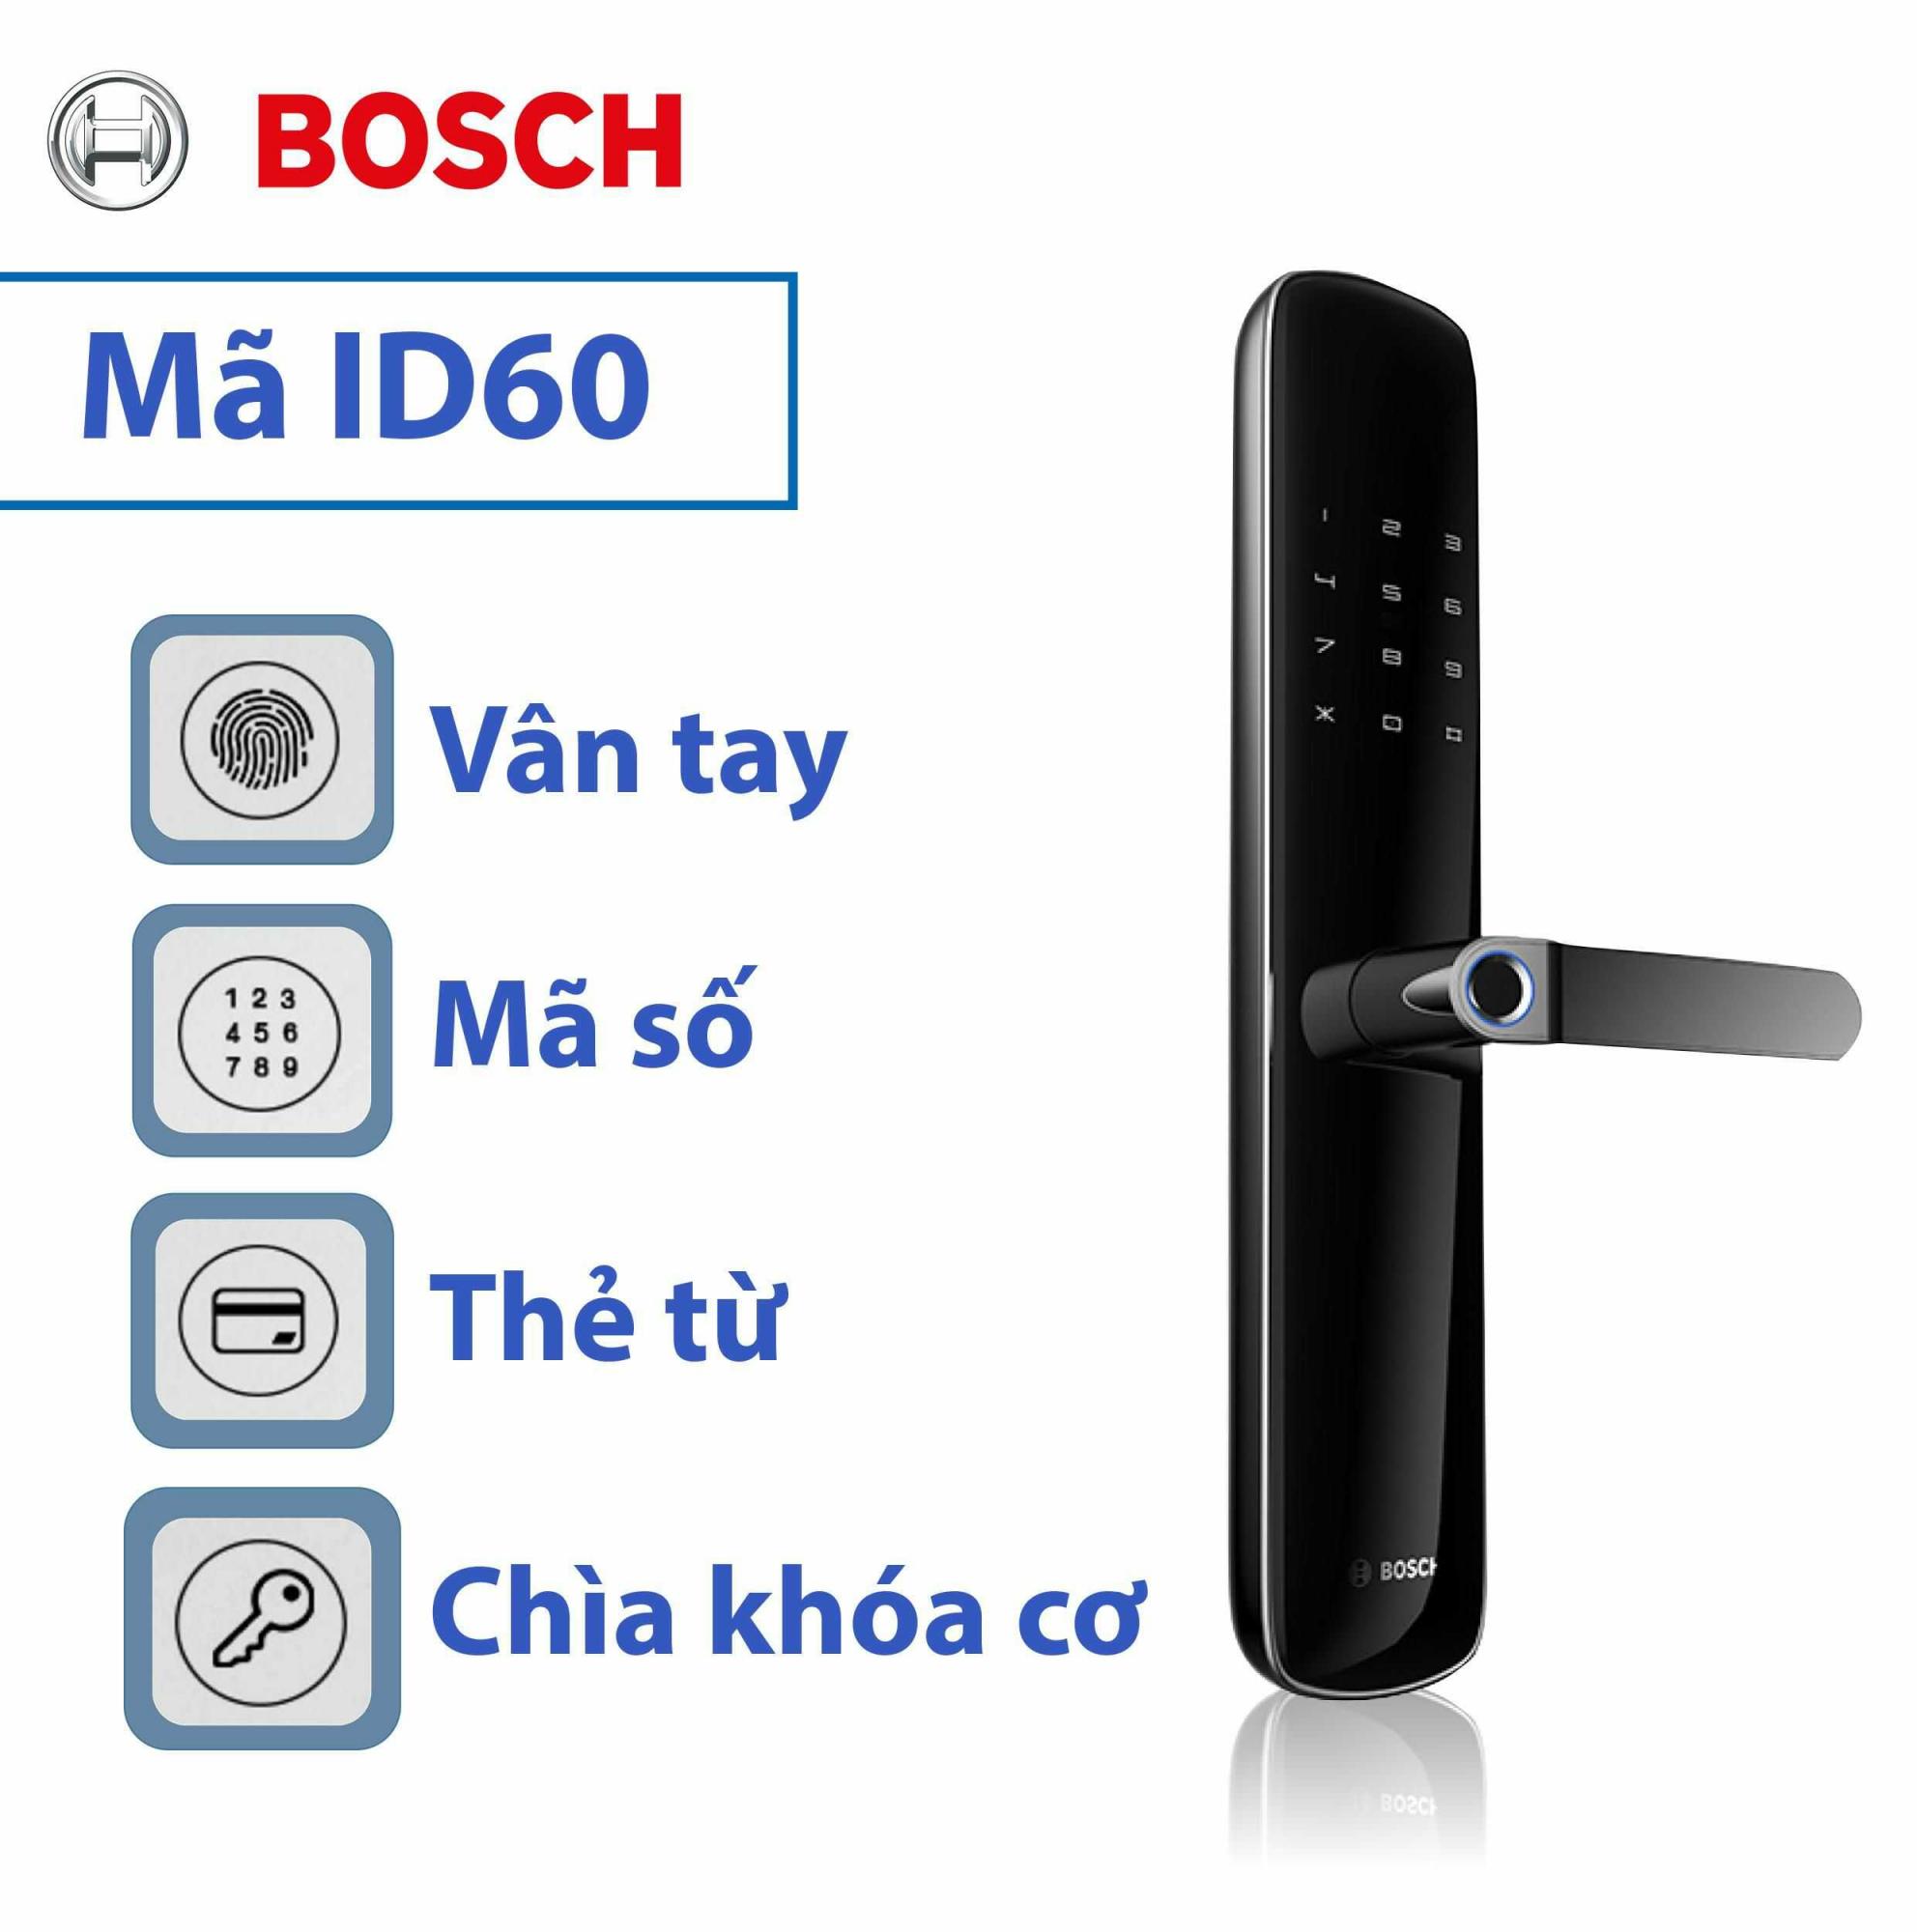 Khóa Bosch ID60 mở cửa bằng nhiều phương thức